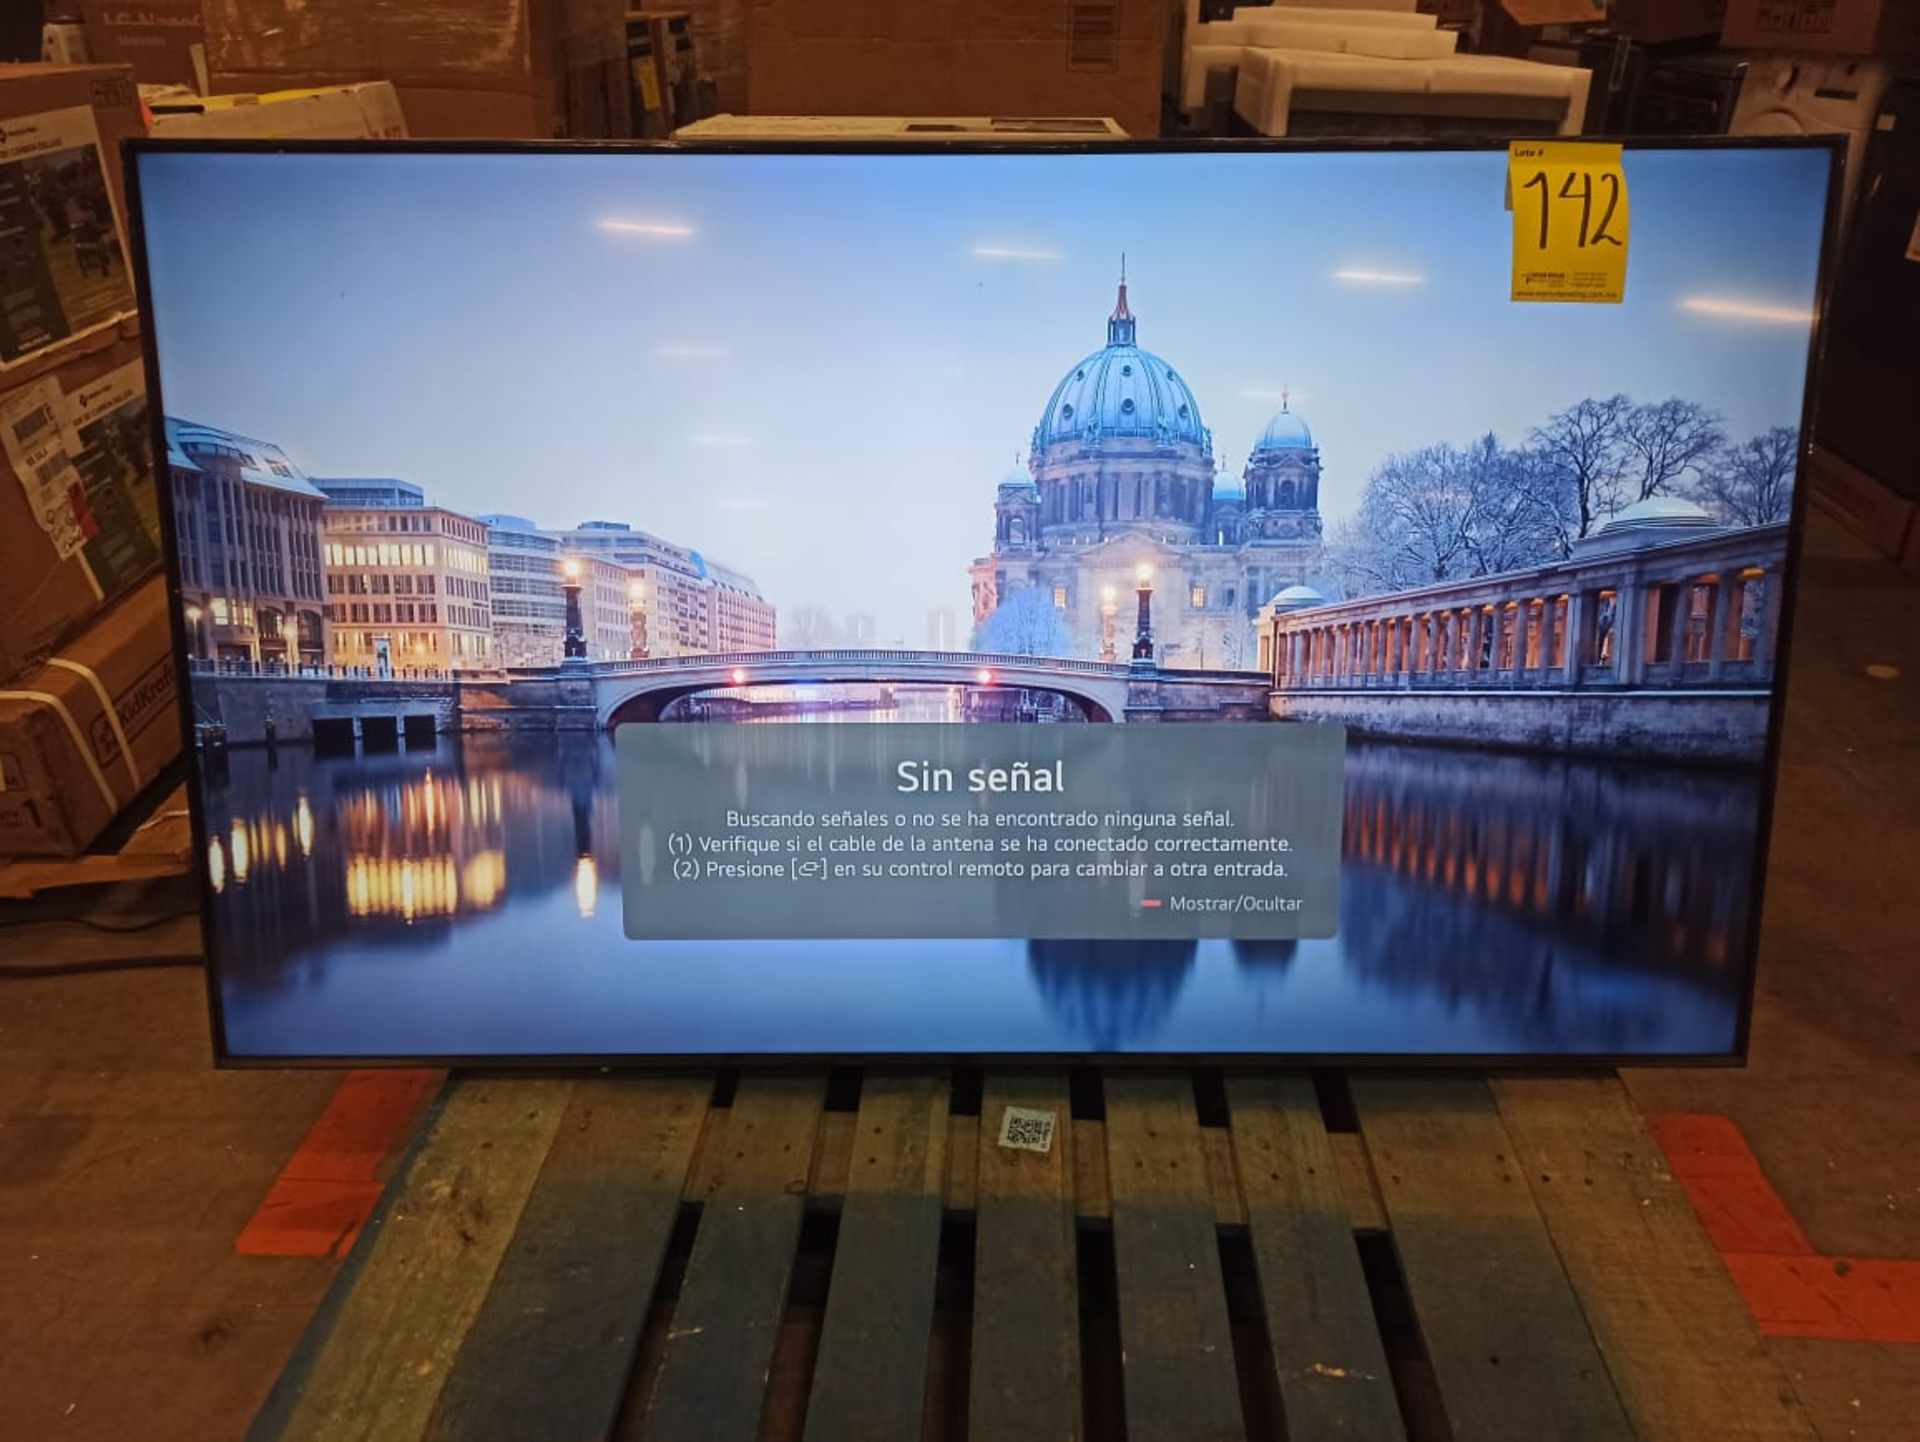 Lote de 2 pantallas contiene: 1 pantalla de 75" Marca SAMSUNG, Modelo Crystal UHD AU8200 4K; 1 pant